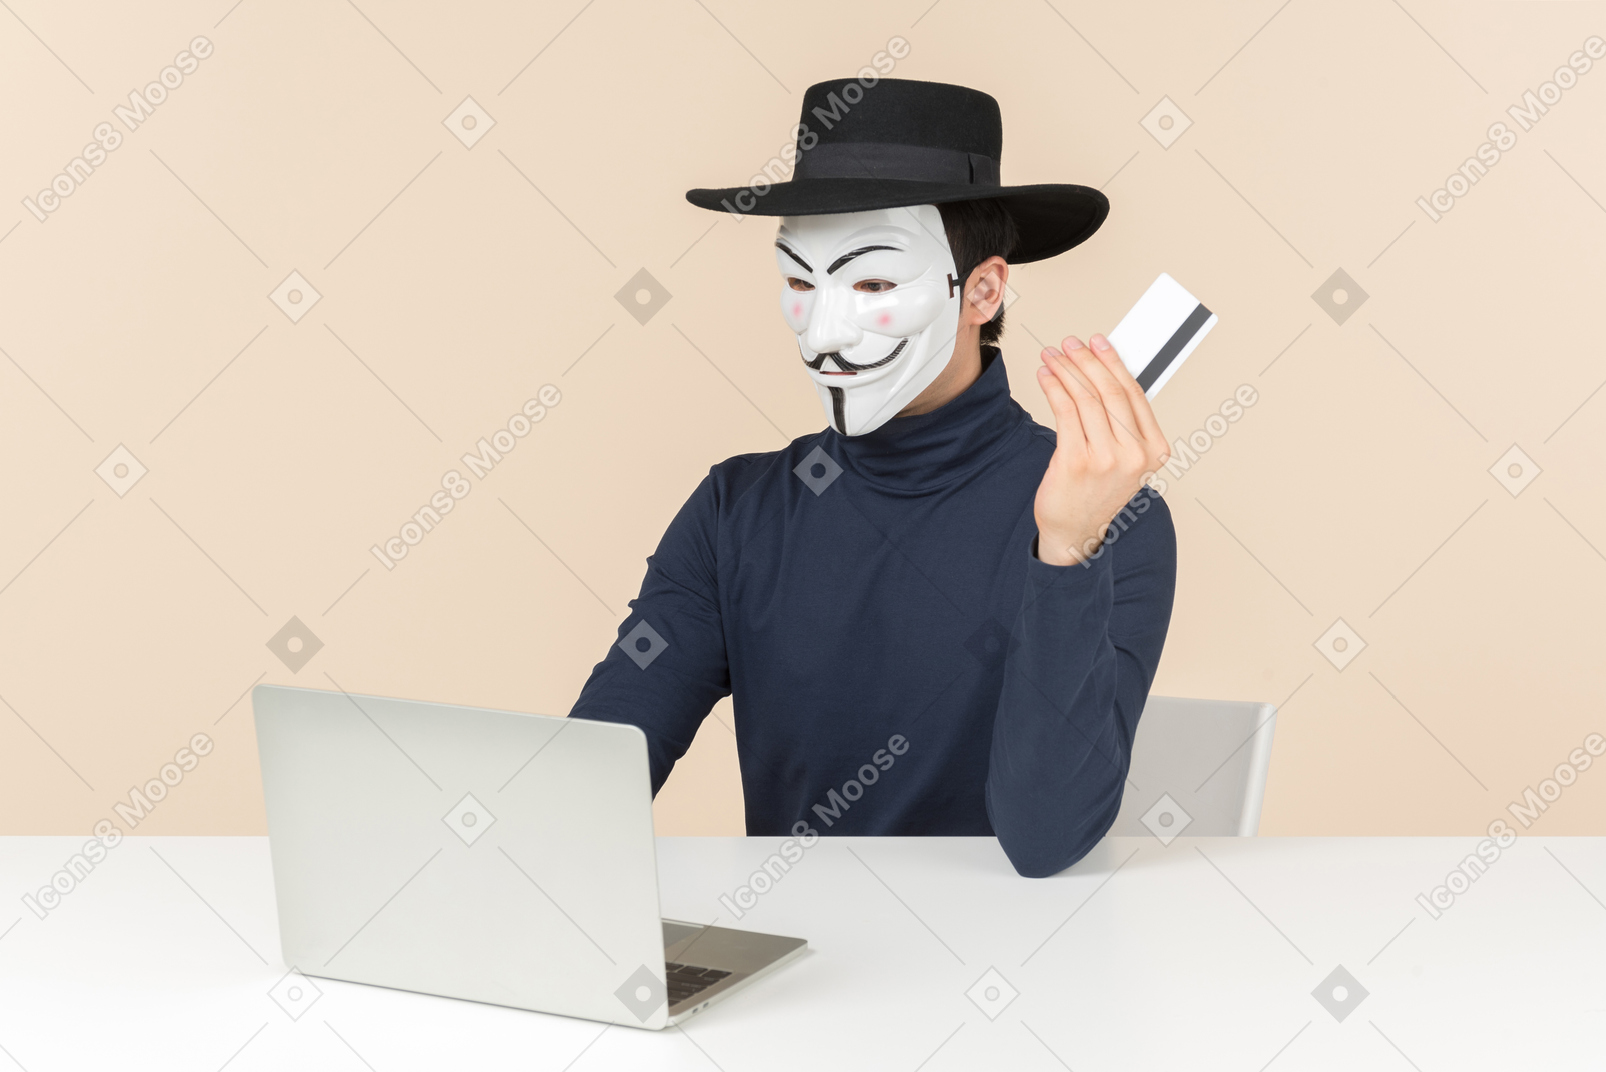 ノートパソコンに座っているとbakカードを保持しているvendettaマスクを着ているハッカー